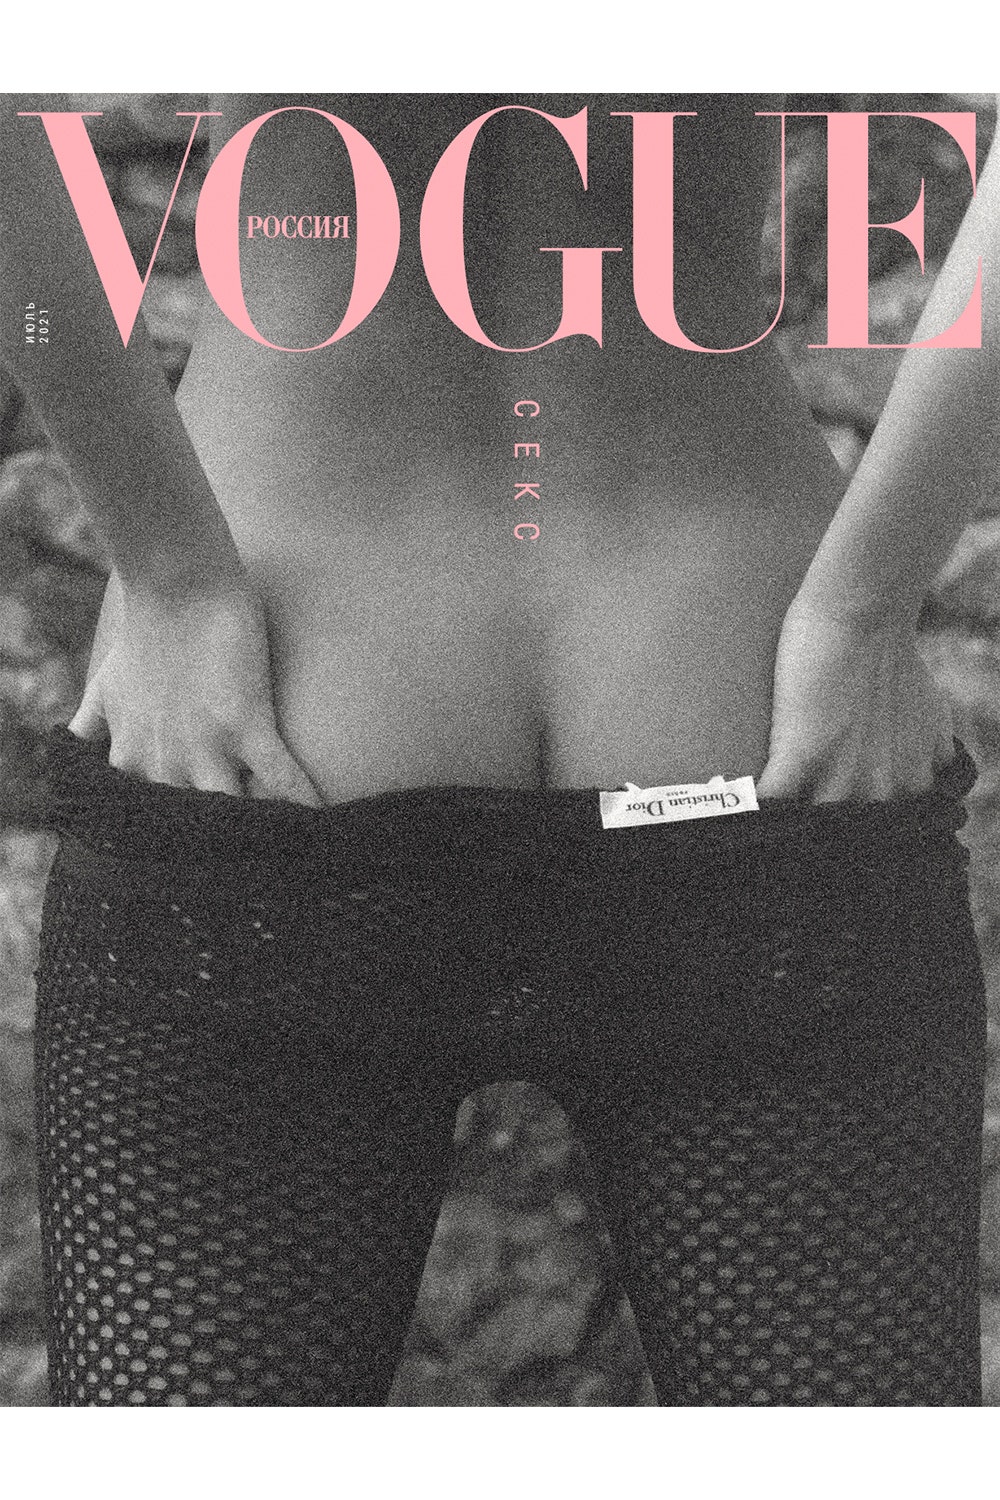 Ксения Соловьева об июльском номере Vogue Россия